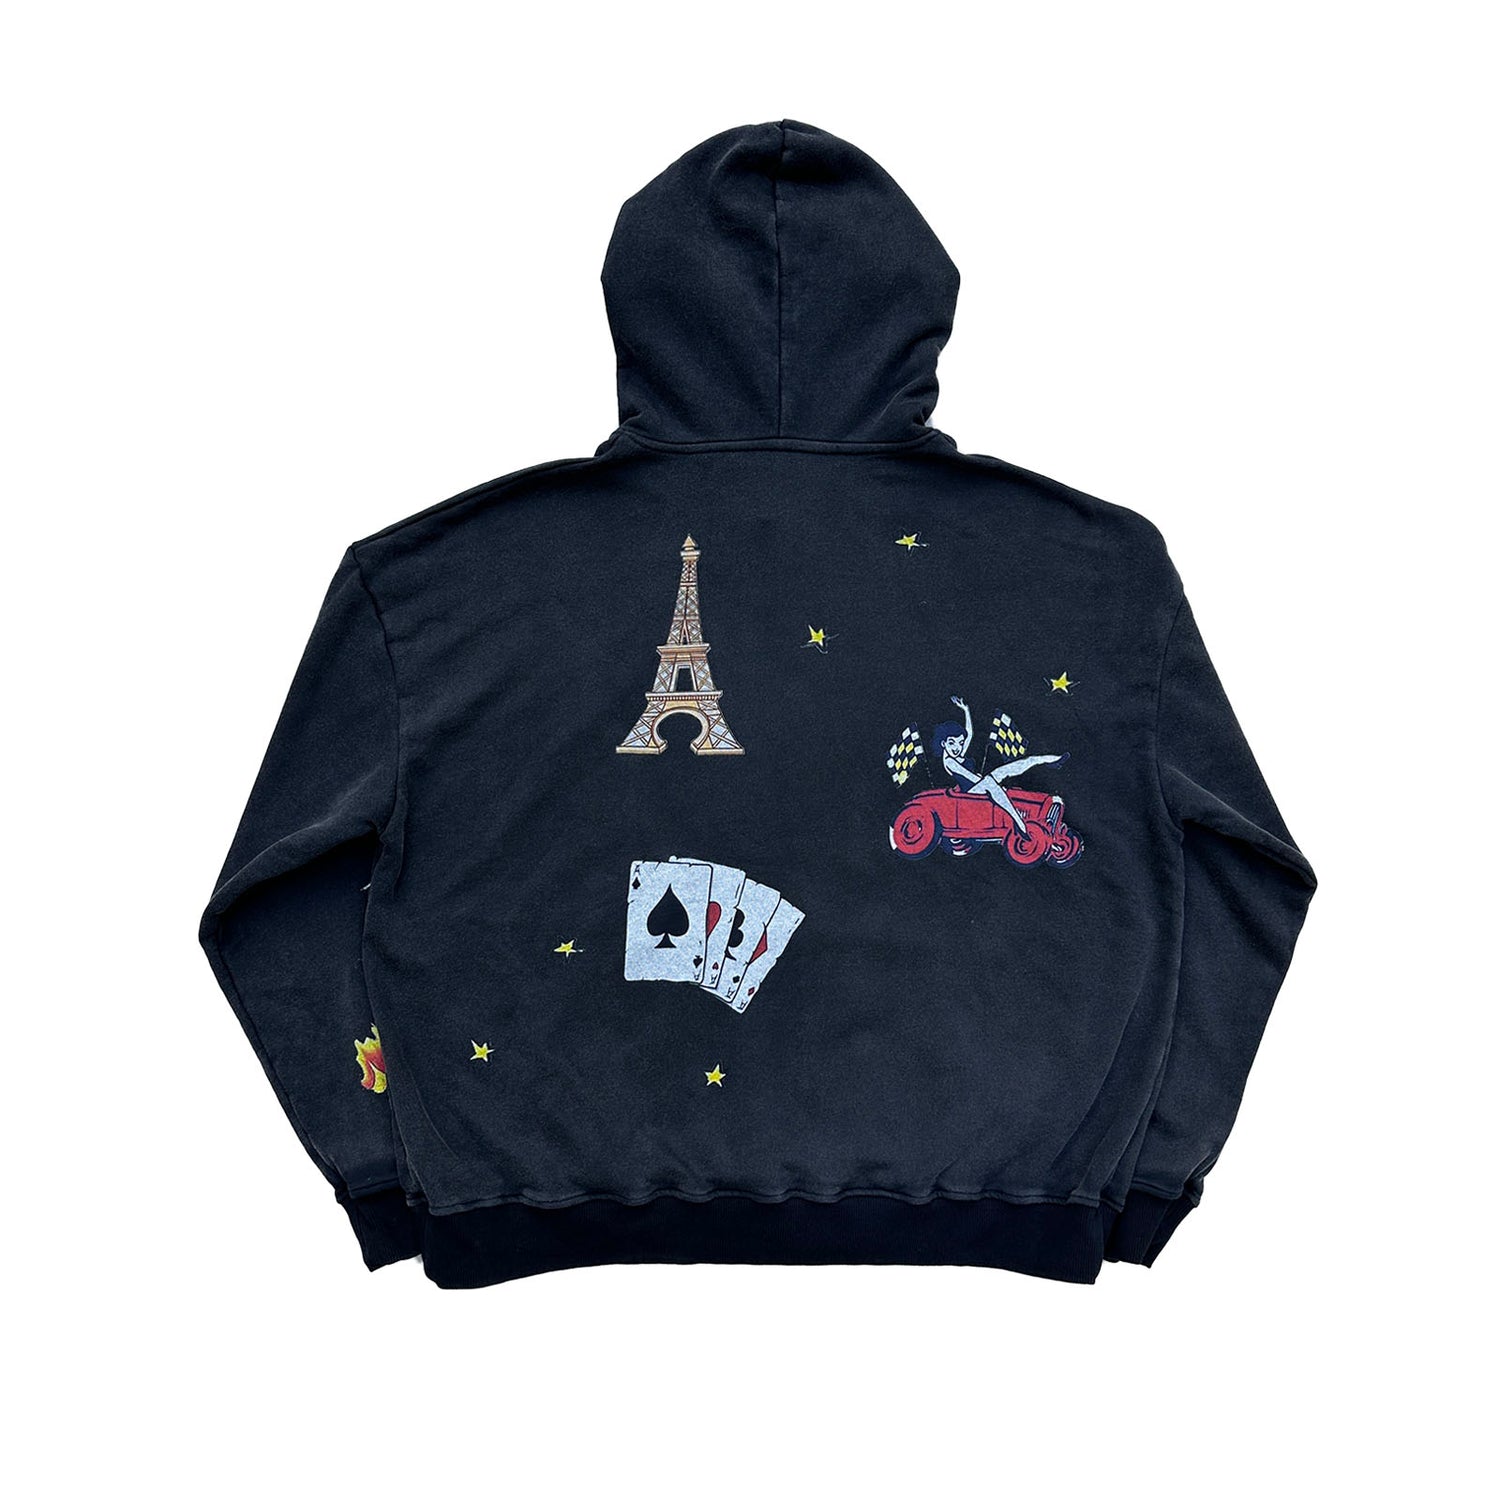 Vintage artist hoodie – Le rêve nazam